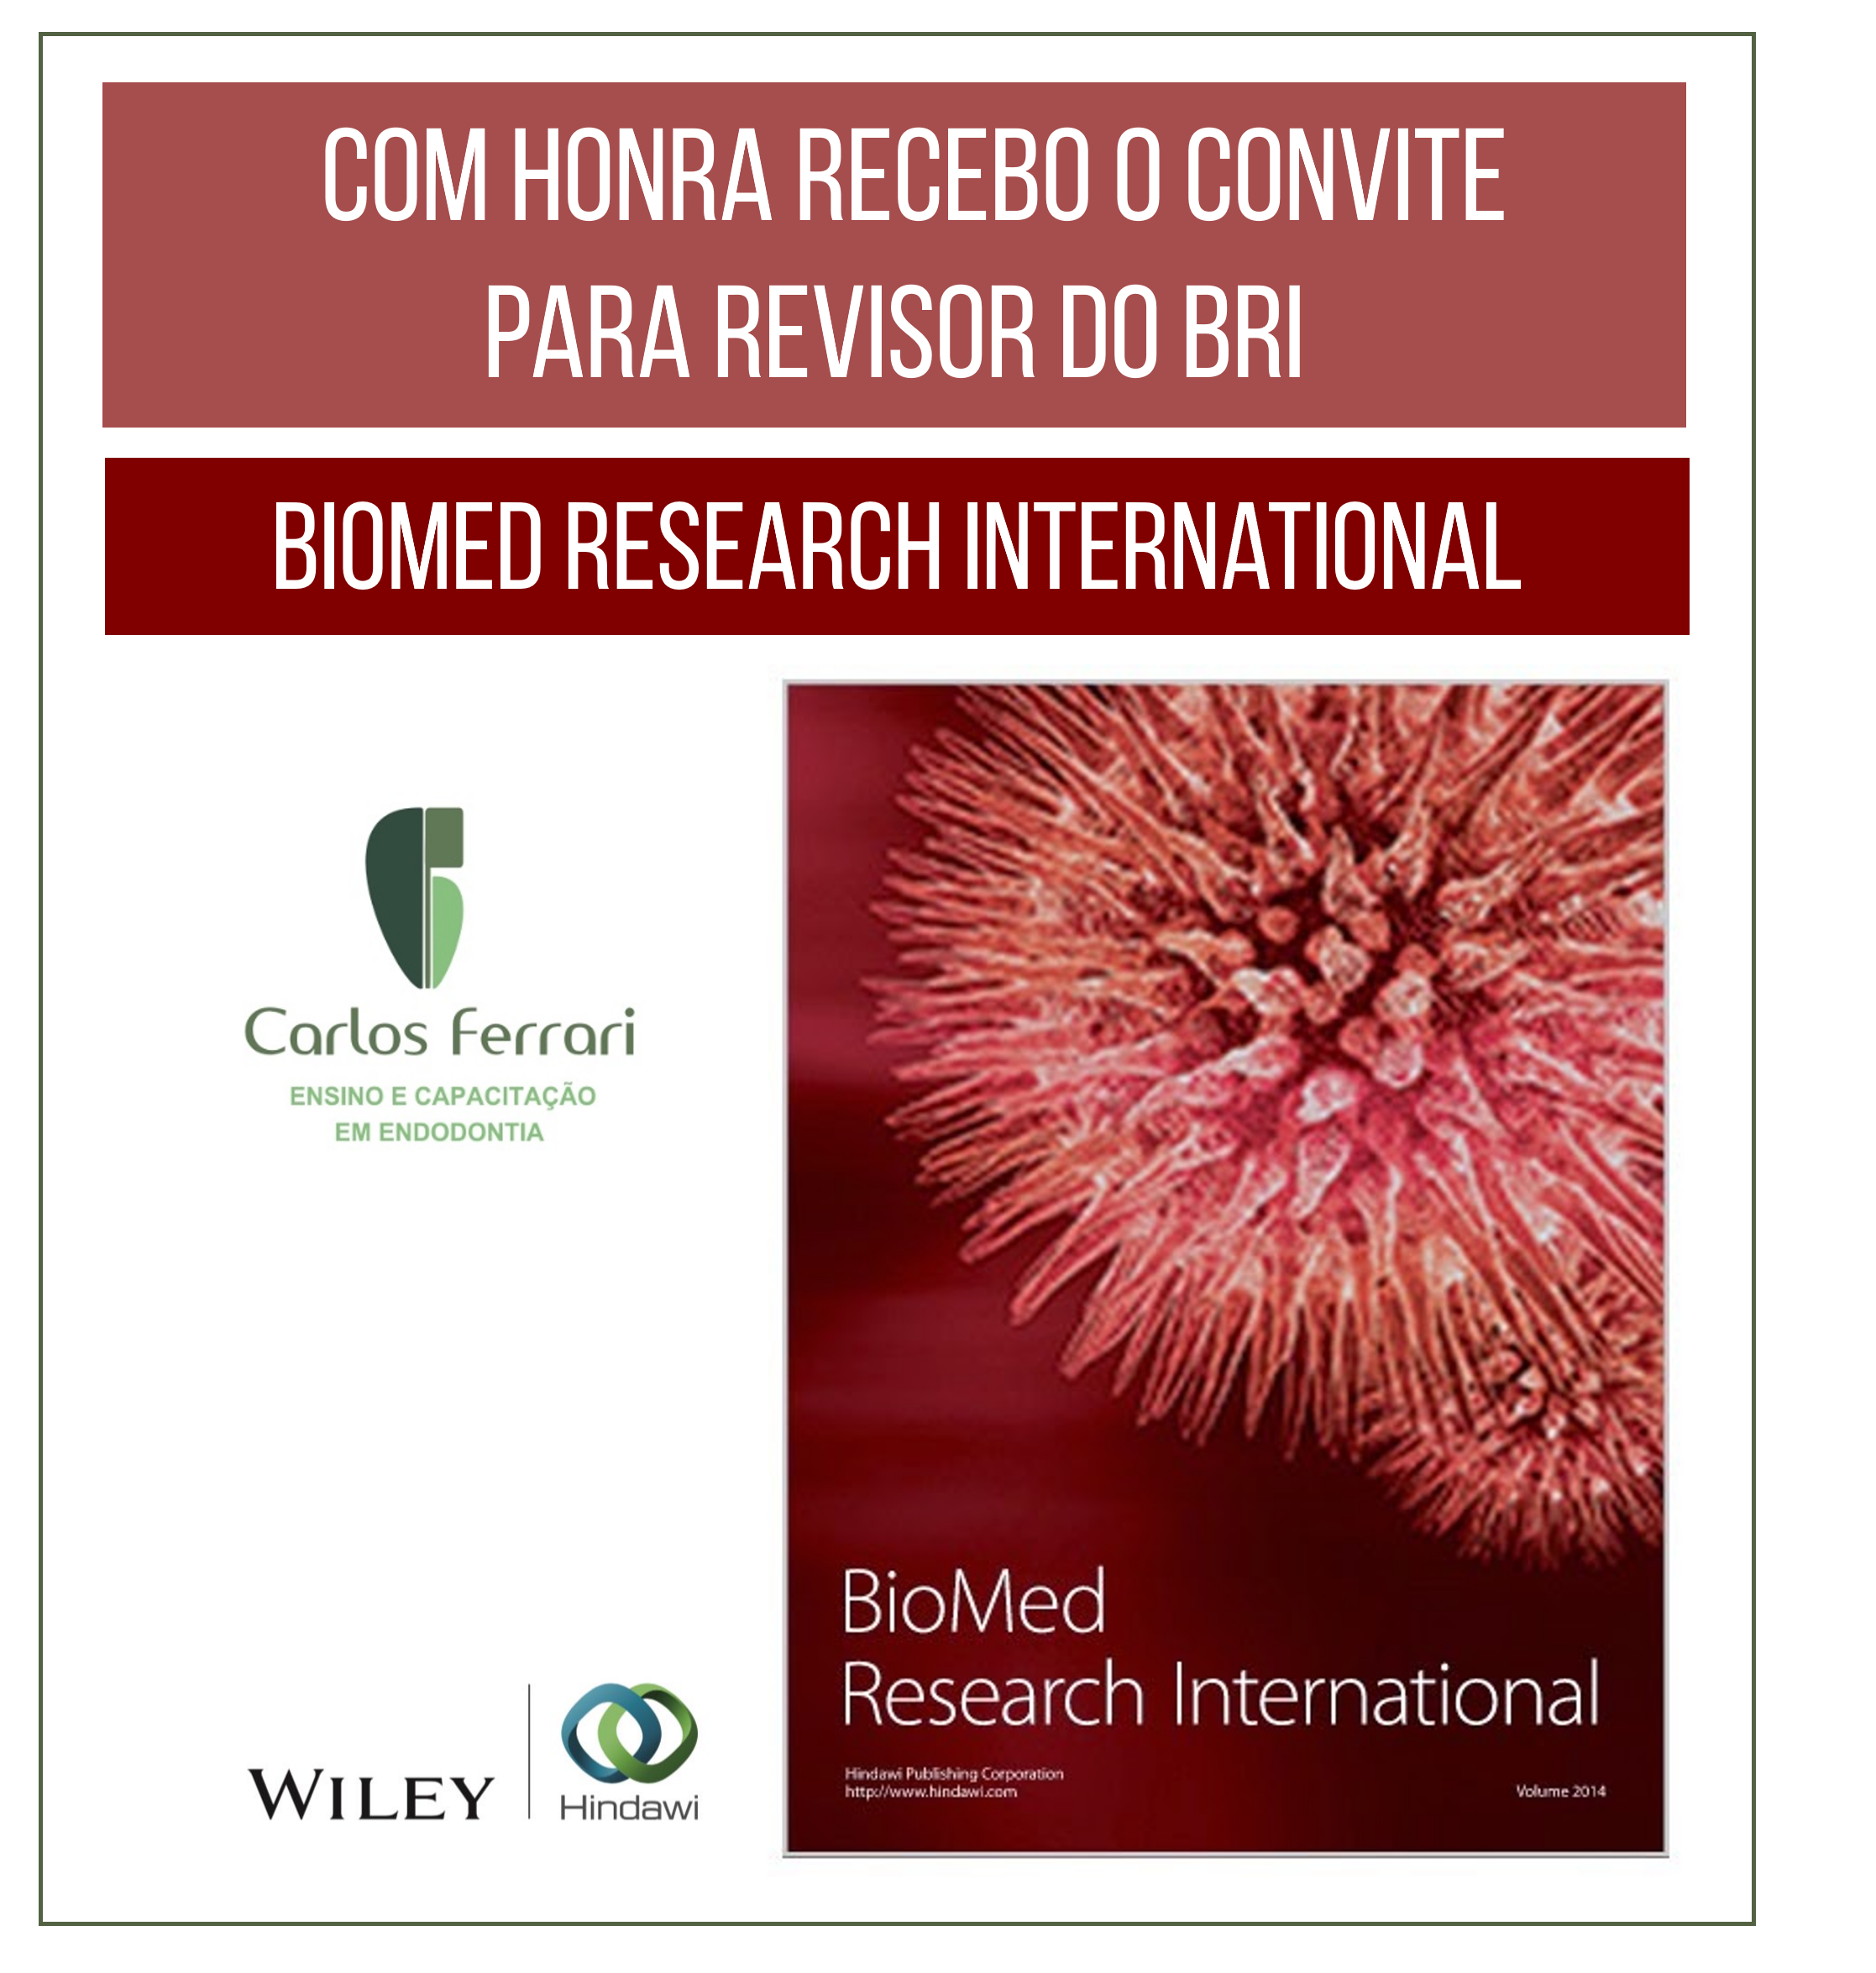 Está viendo Invitación para evaluar Biomedic Research International